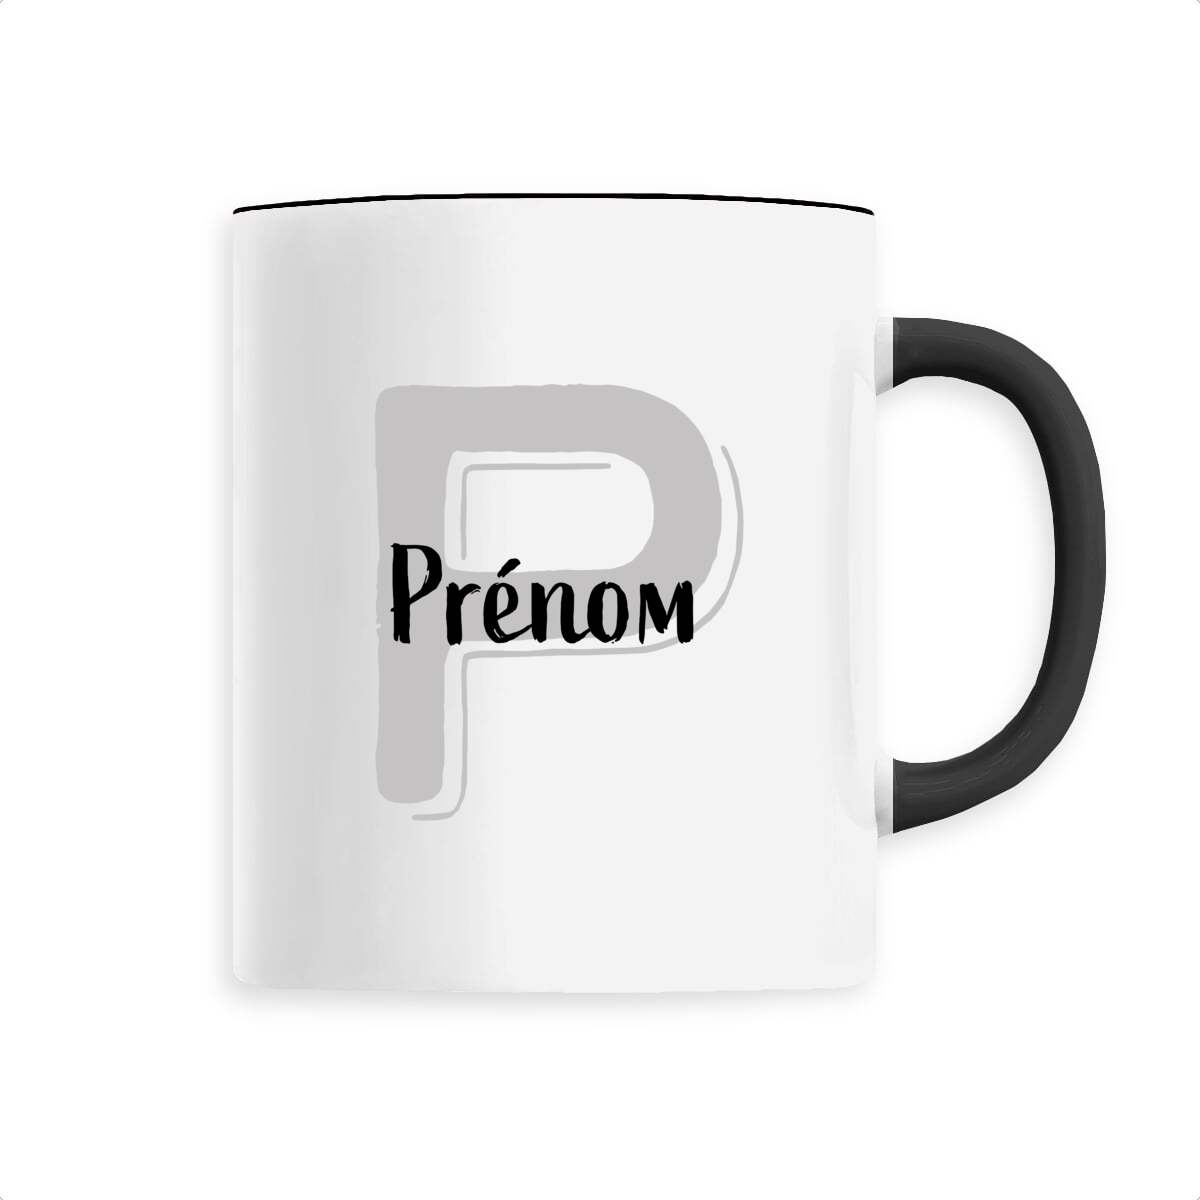 Mug en Céramique - Prénom, mug personnalisé avec prénom et initiale de T-French, mug avec prénom, mug personnalisable, mug prénom personnalisé, tasse personnalisé, mug prénom et initiale, mug avec prénom homme et femme, mug idée cadeau, mug prénom, mug personnalisé noir